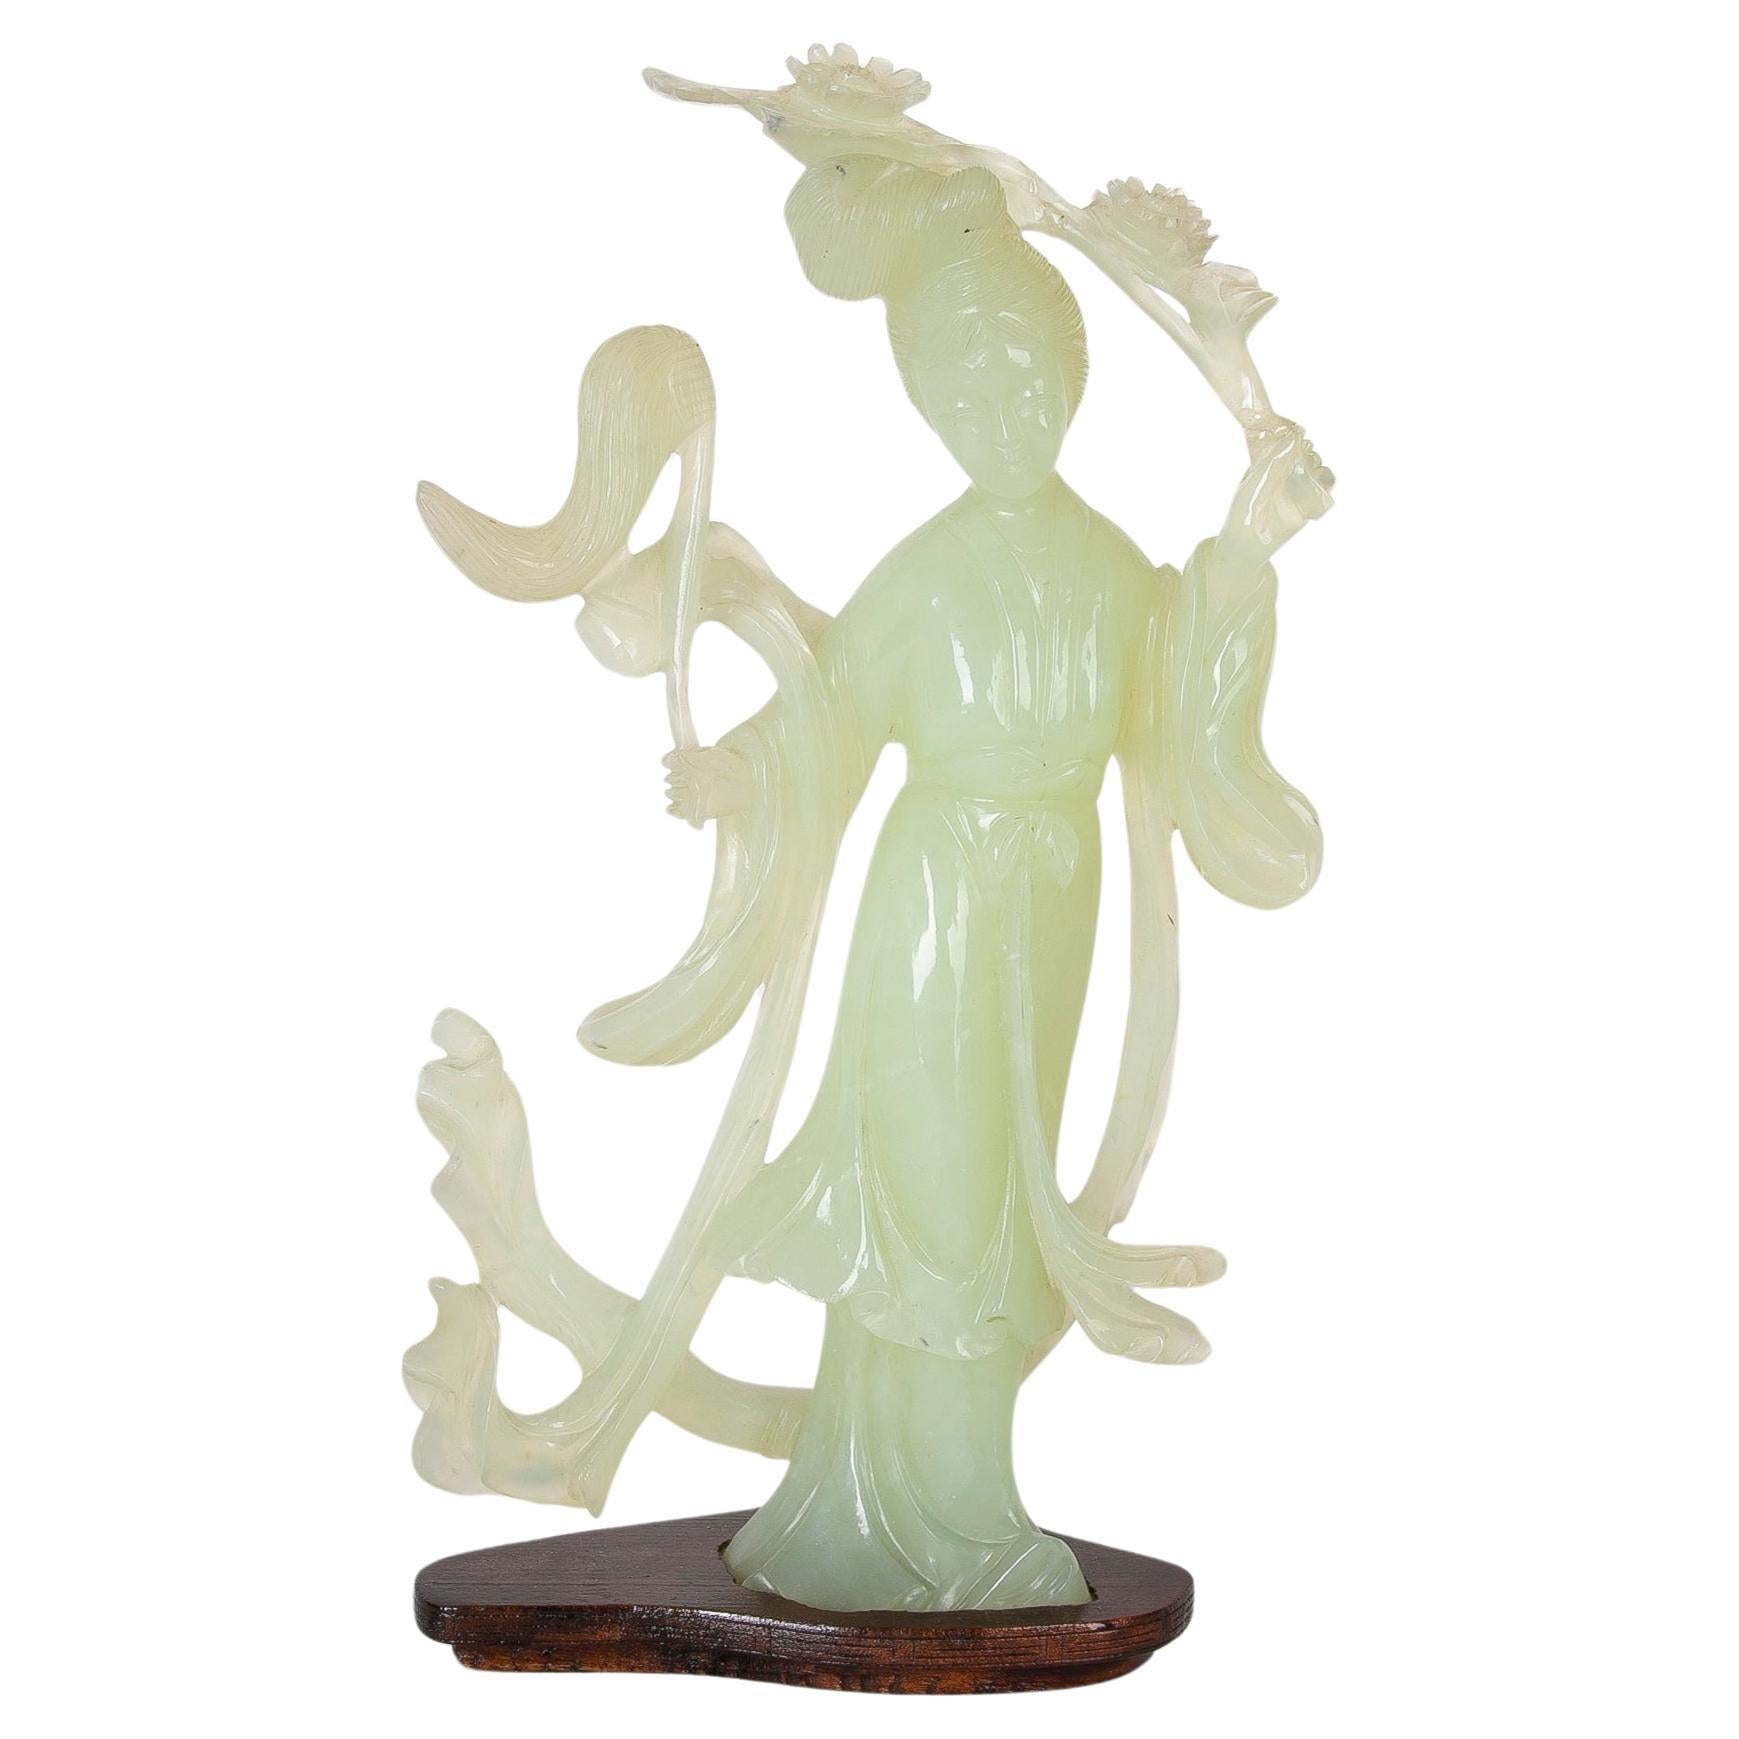 Handgeschnitzte Jadeitfigur einer orientalischen Frau aus Jadeit auf einem Holzsockel